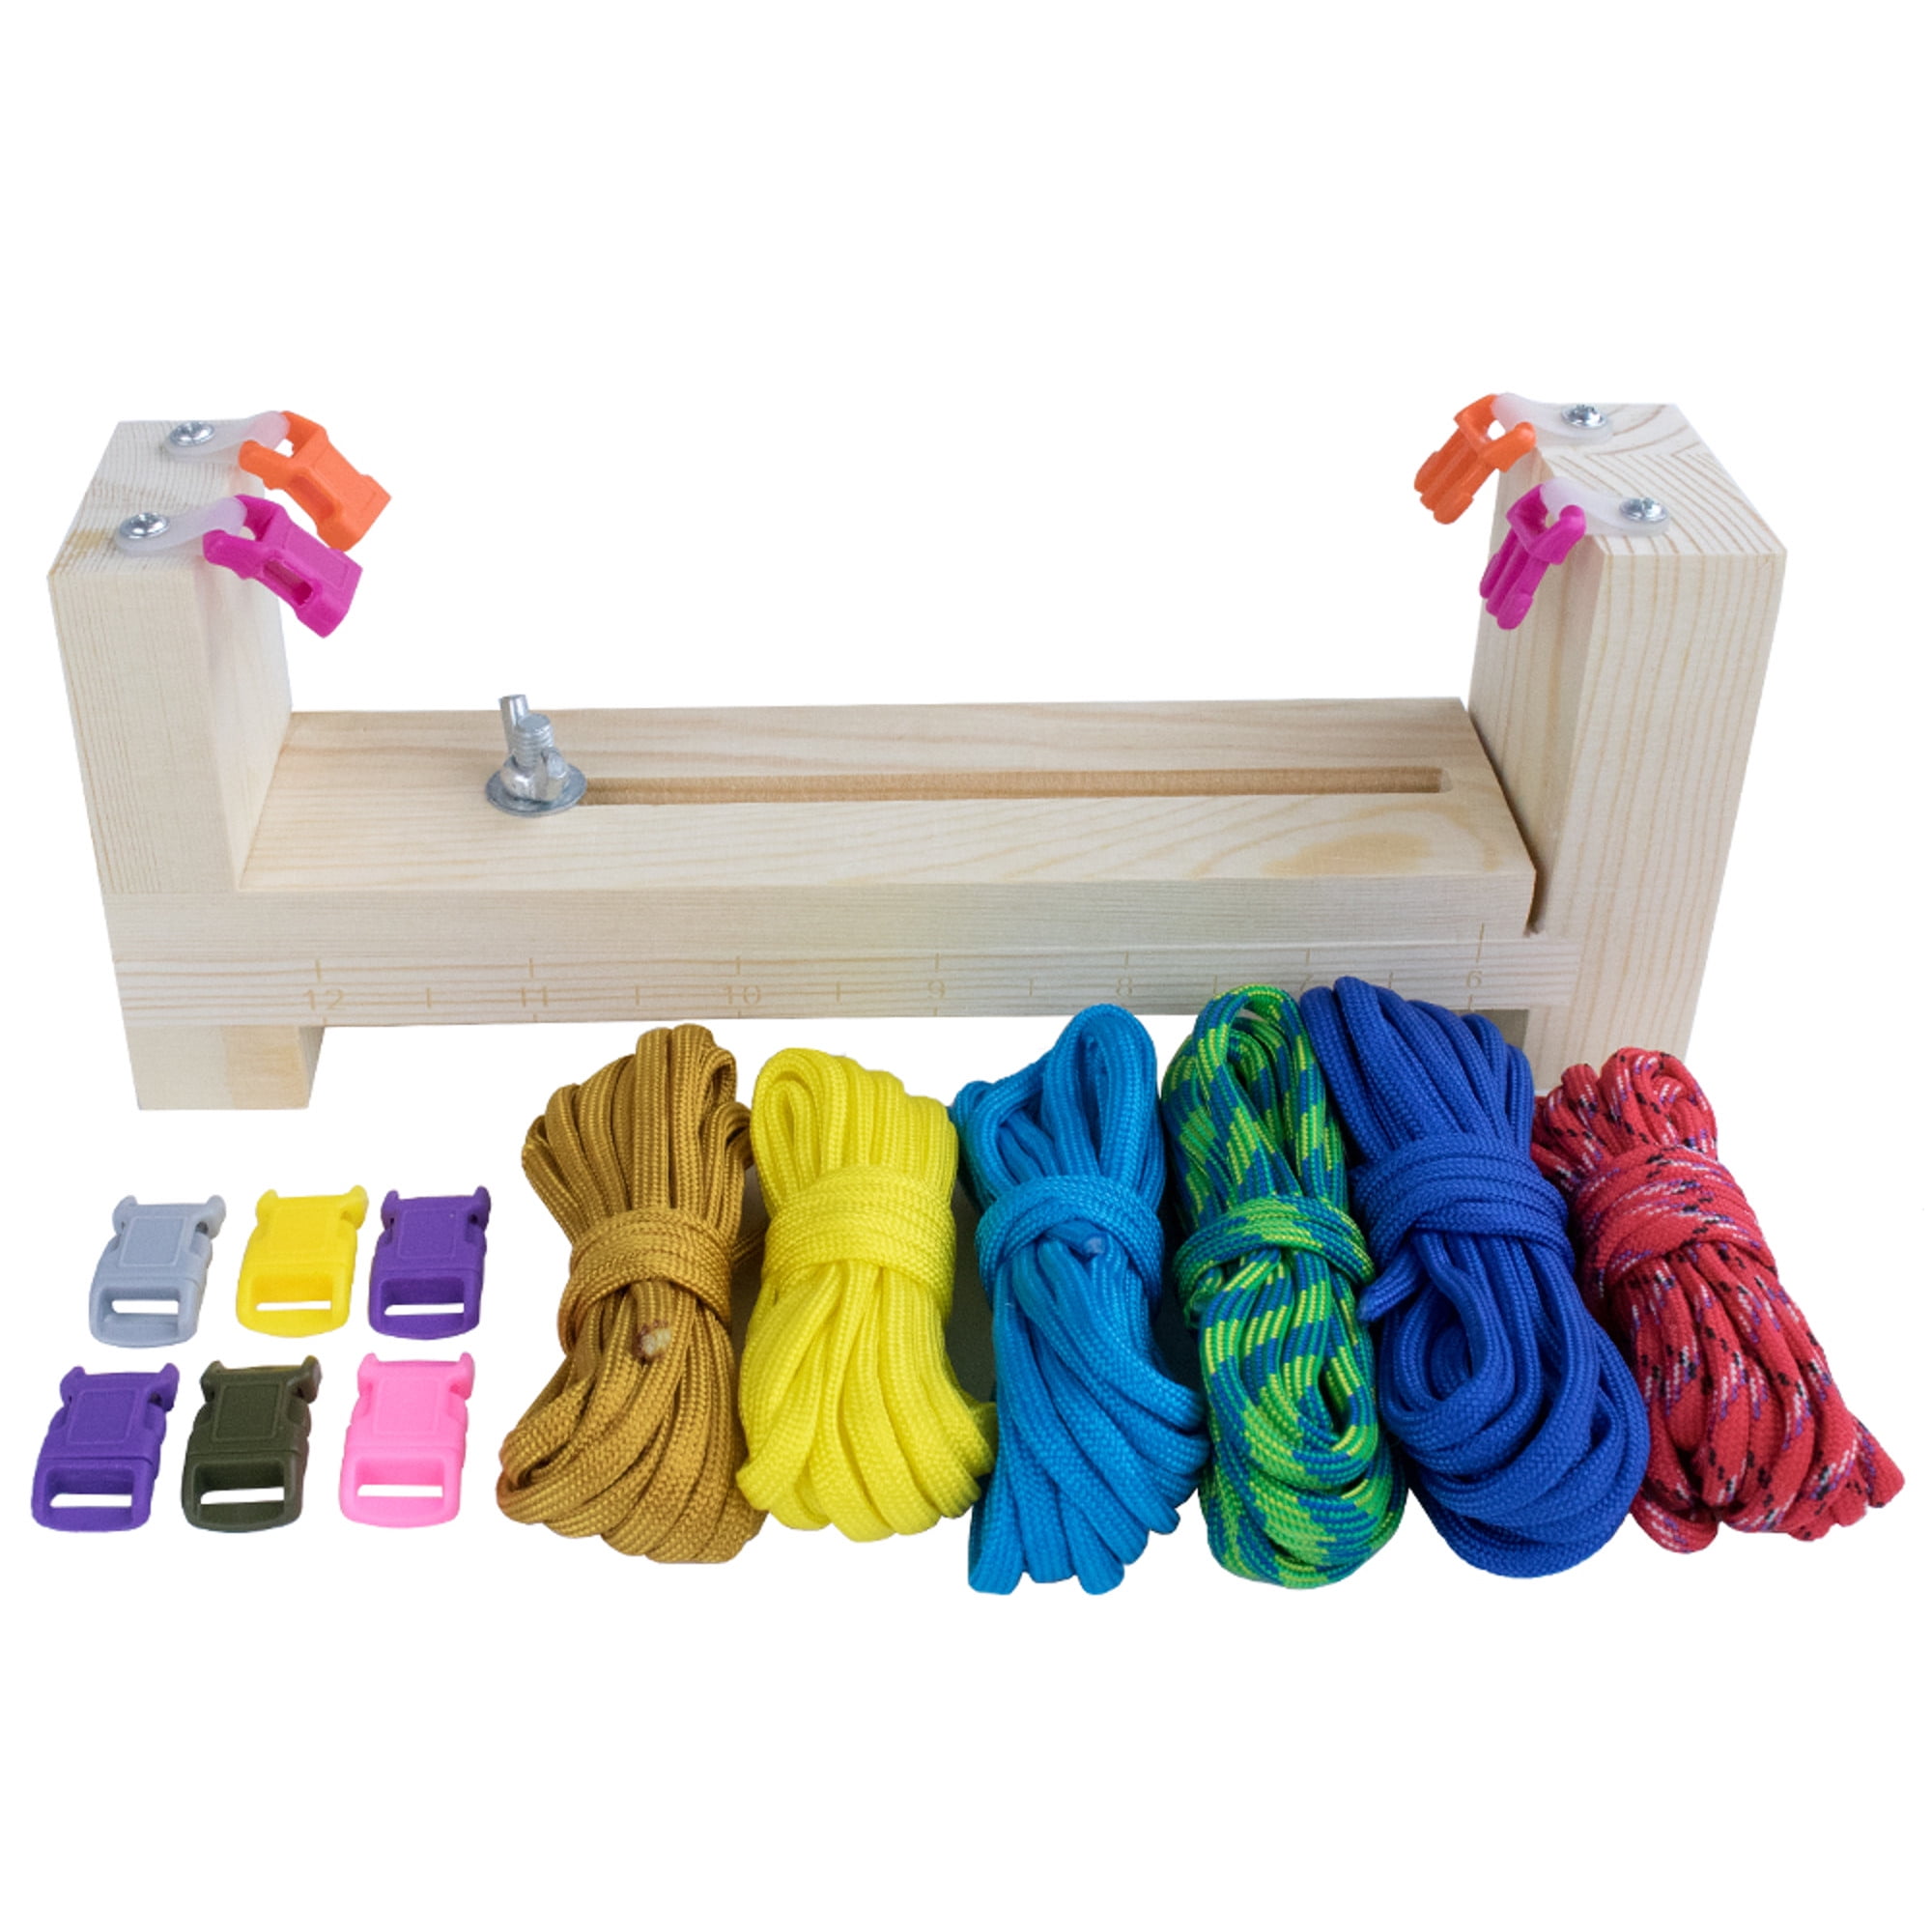 Stainless Steel Paracord Bracelet Maker Jig Kit Knitting Cord Knit